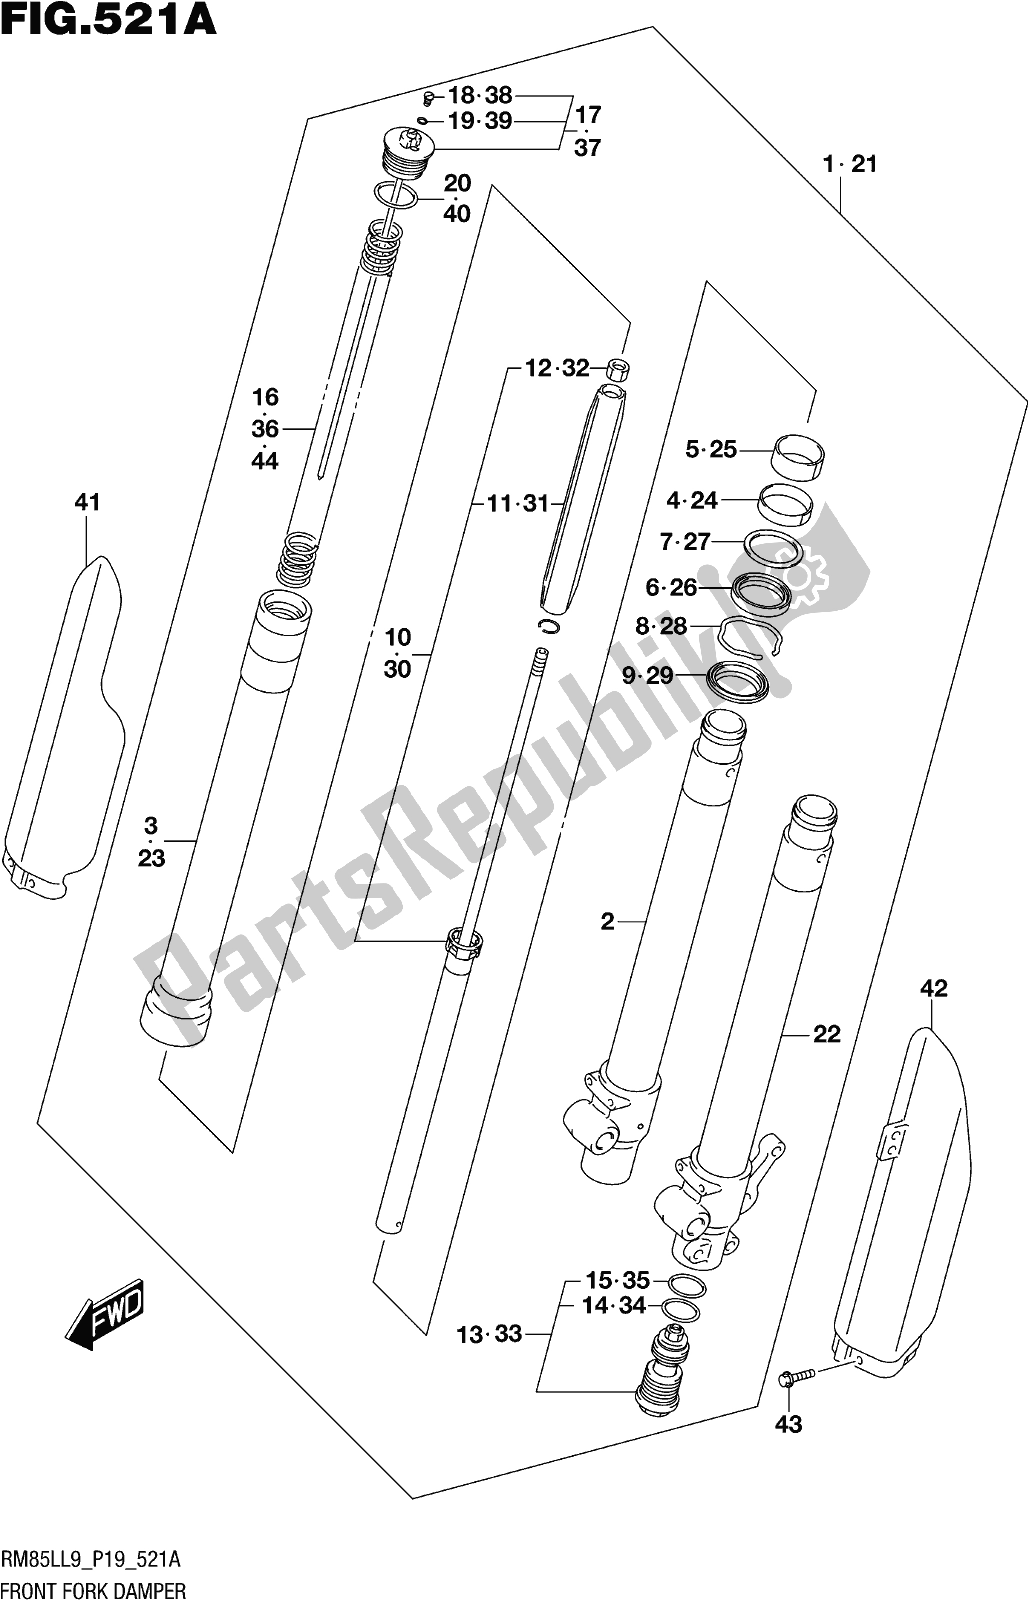 Alle onderdelen voor de Fig. 521a Front Fork Damper van de Suzuki RM 85L 2019